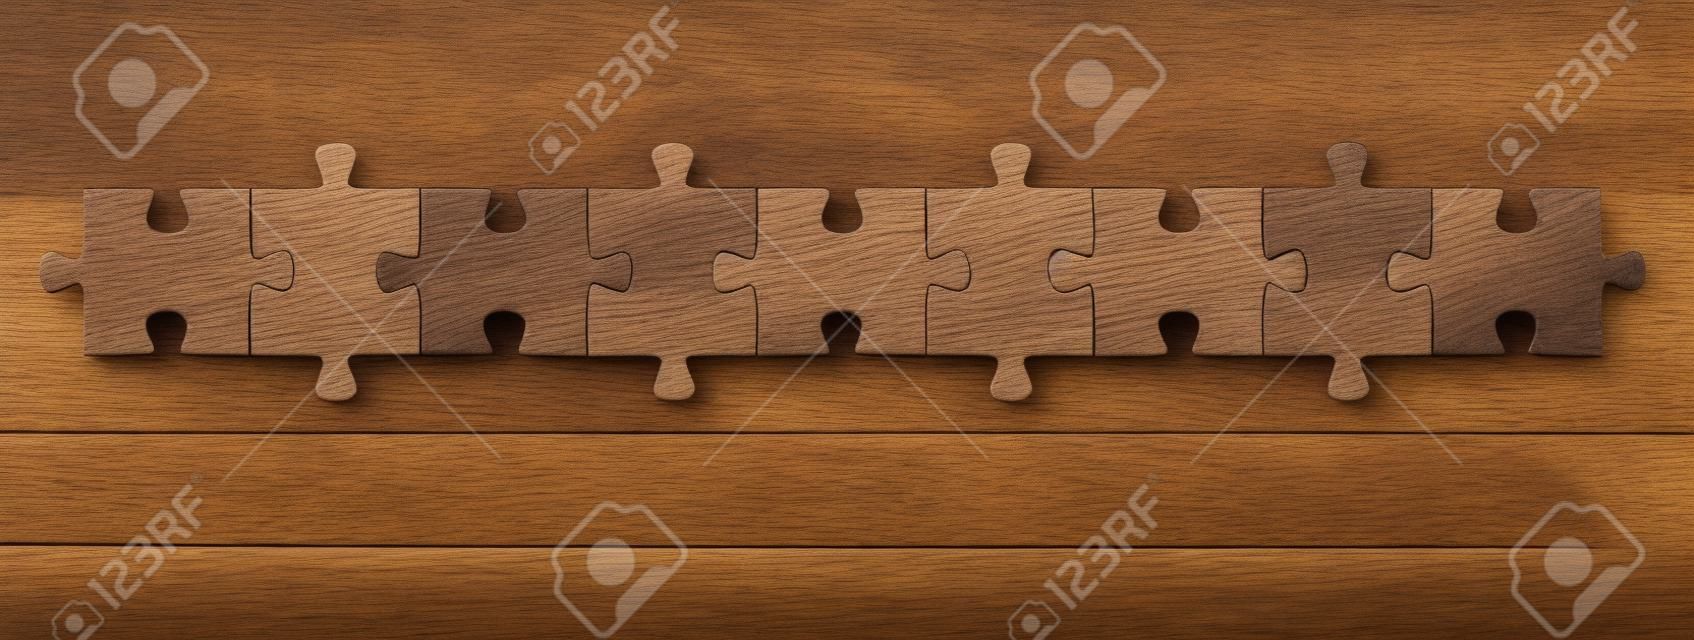 teamwork puzzel op een rij